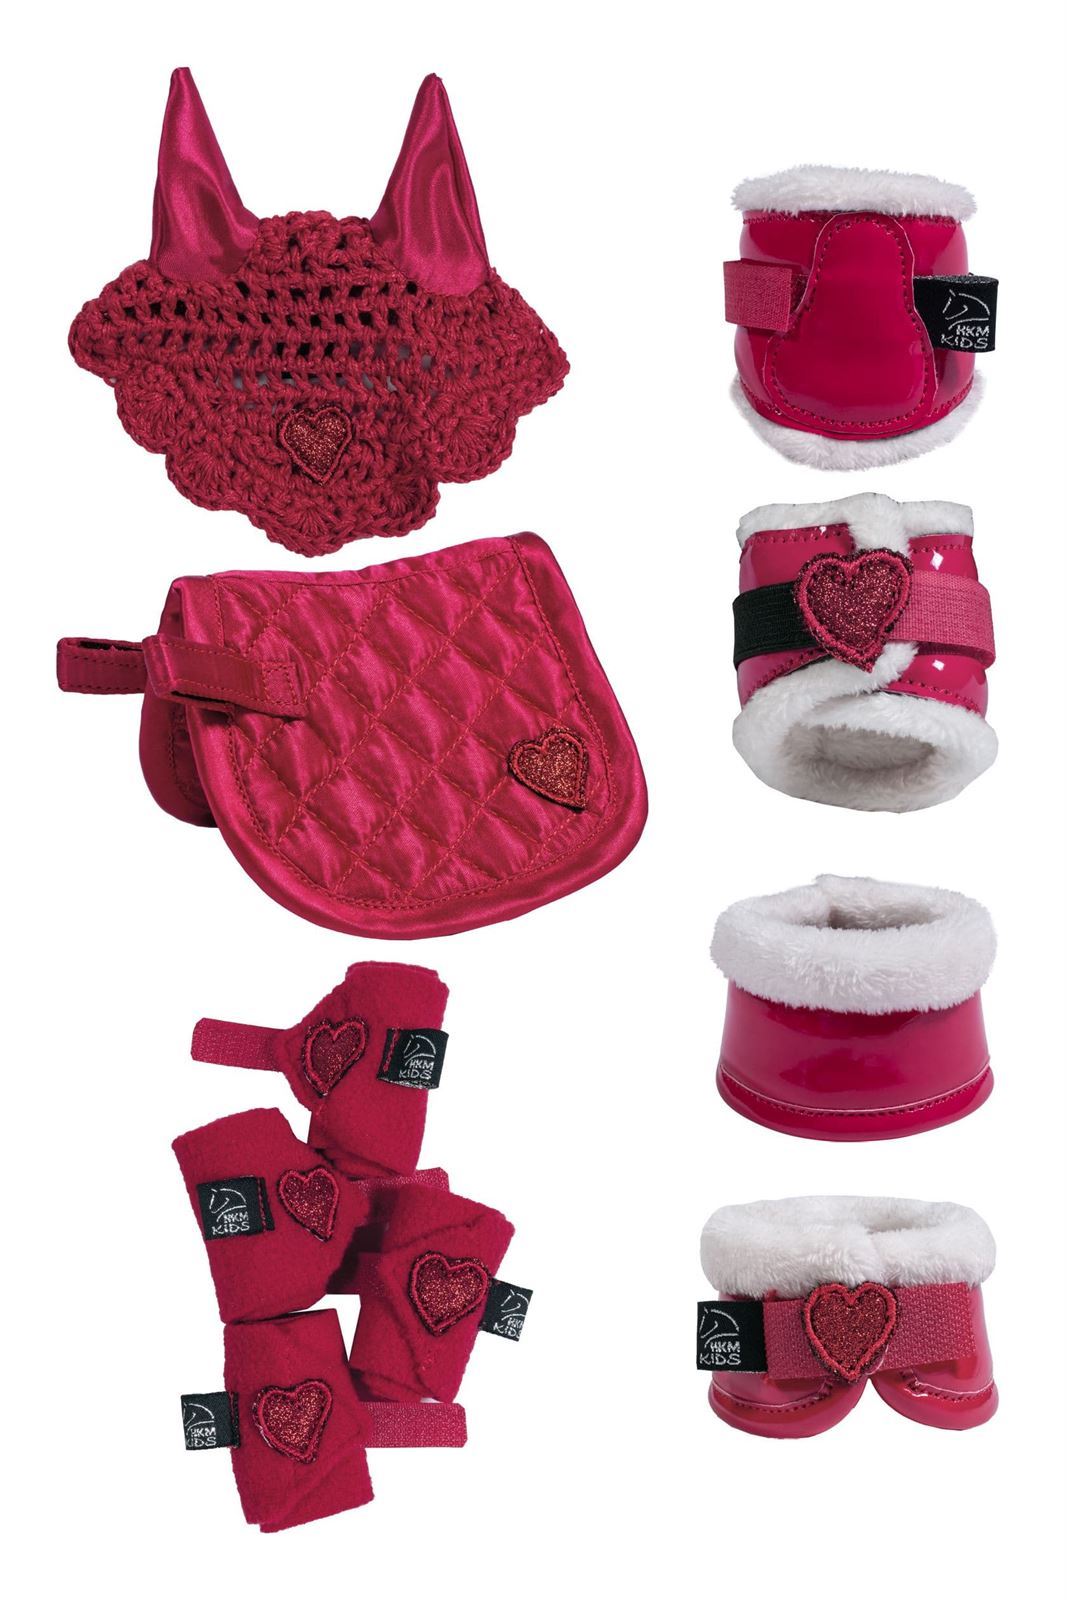 Set accesorios Cuddle pony HKM Sports Equipment Mantilla, orejeras, vendas, protectores y campanas color rosa - Imagen 1